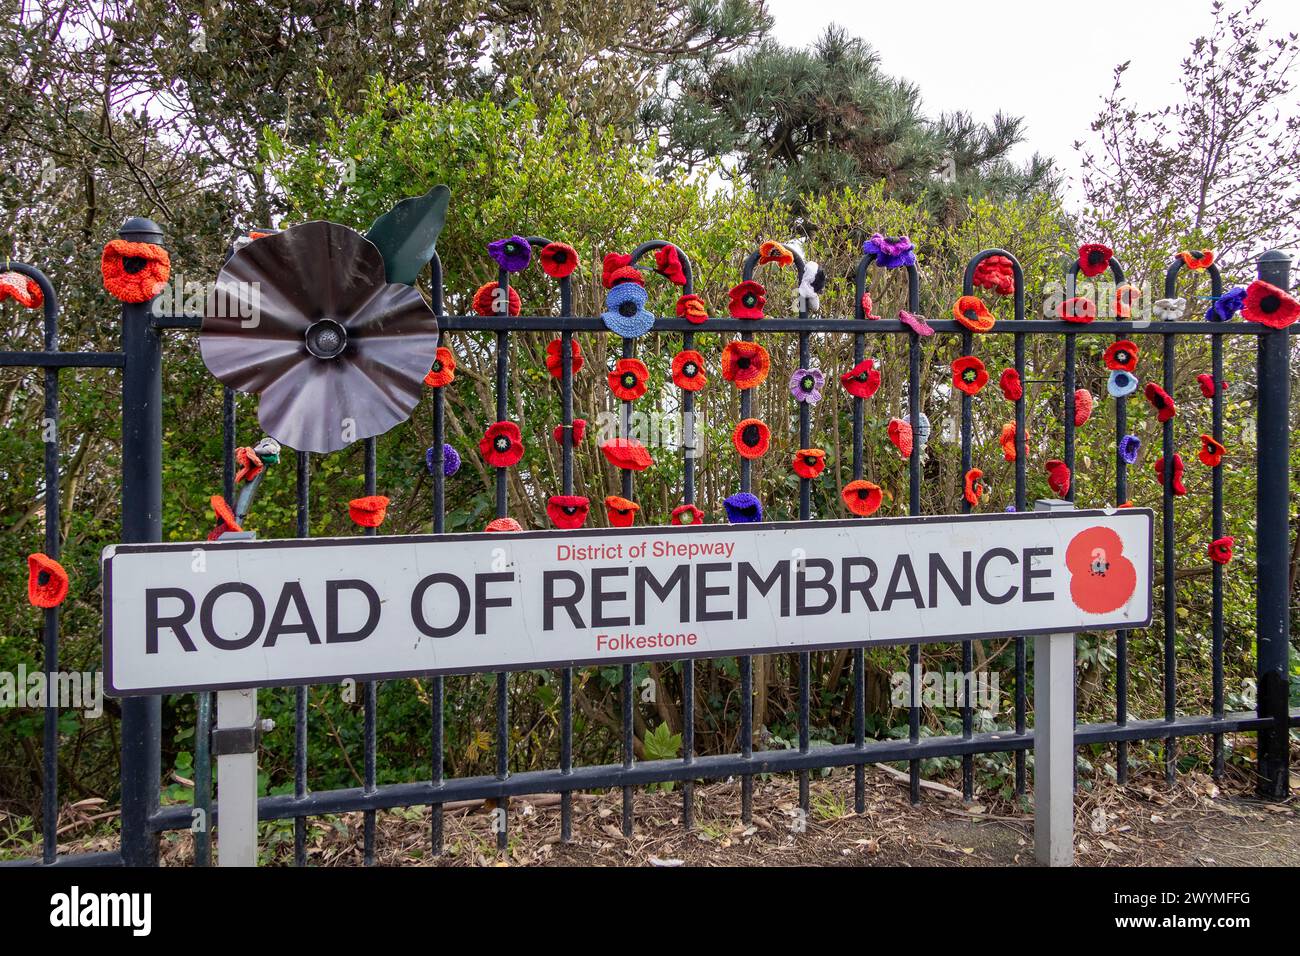 Panneau de rue, fleurs crochetées, route du souvenir, Folkestone, Kent, Angleterre, Grande-Bretagne Banque D'Images